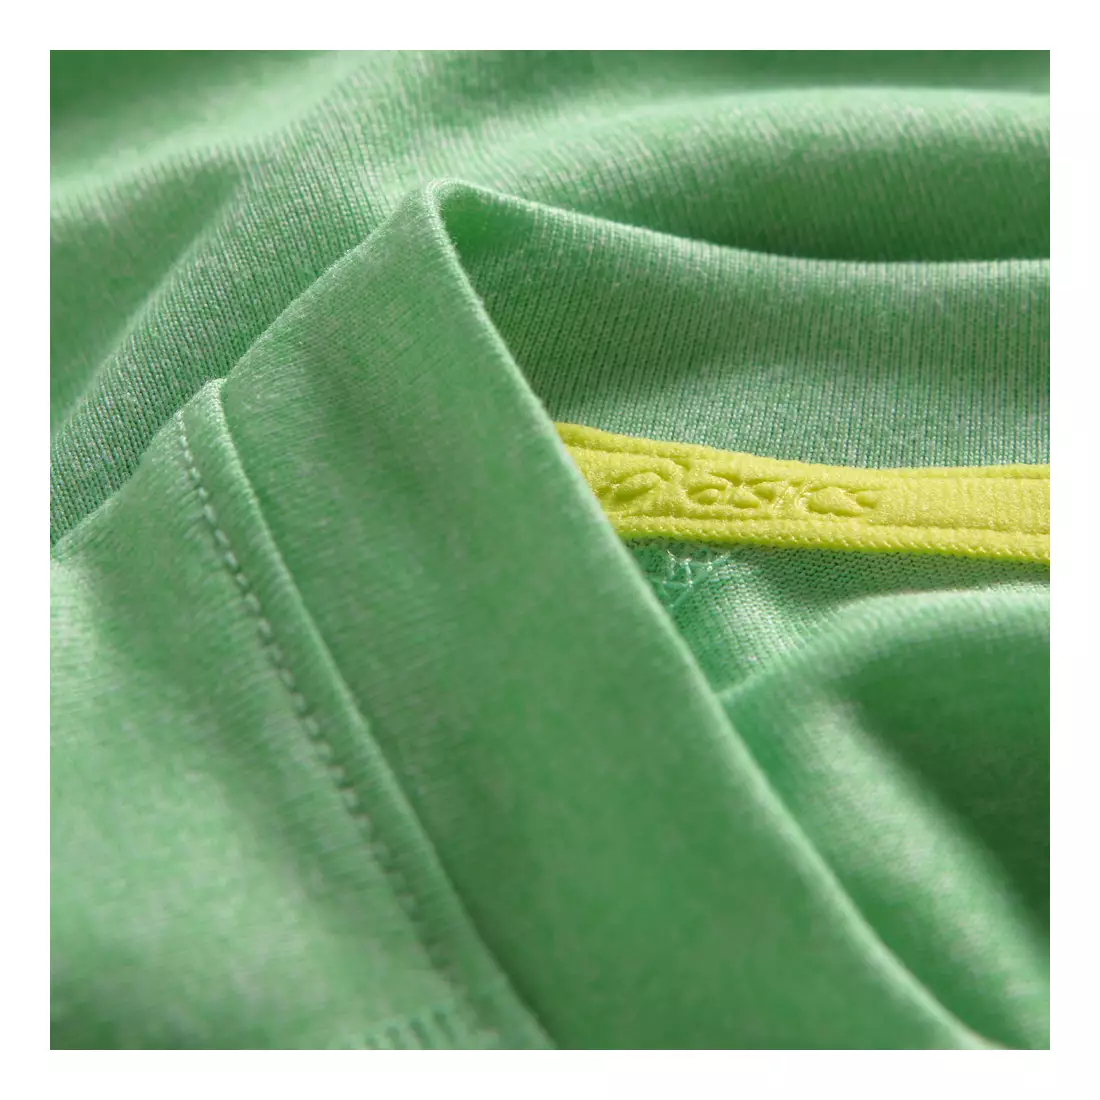 ASICS 110519-0489 SOUKAI GRAPHIC TOP - pánské běžecké tričko, barva: Zelená